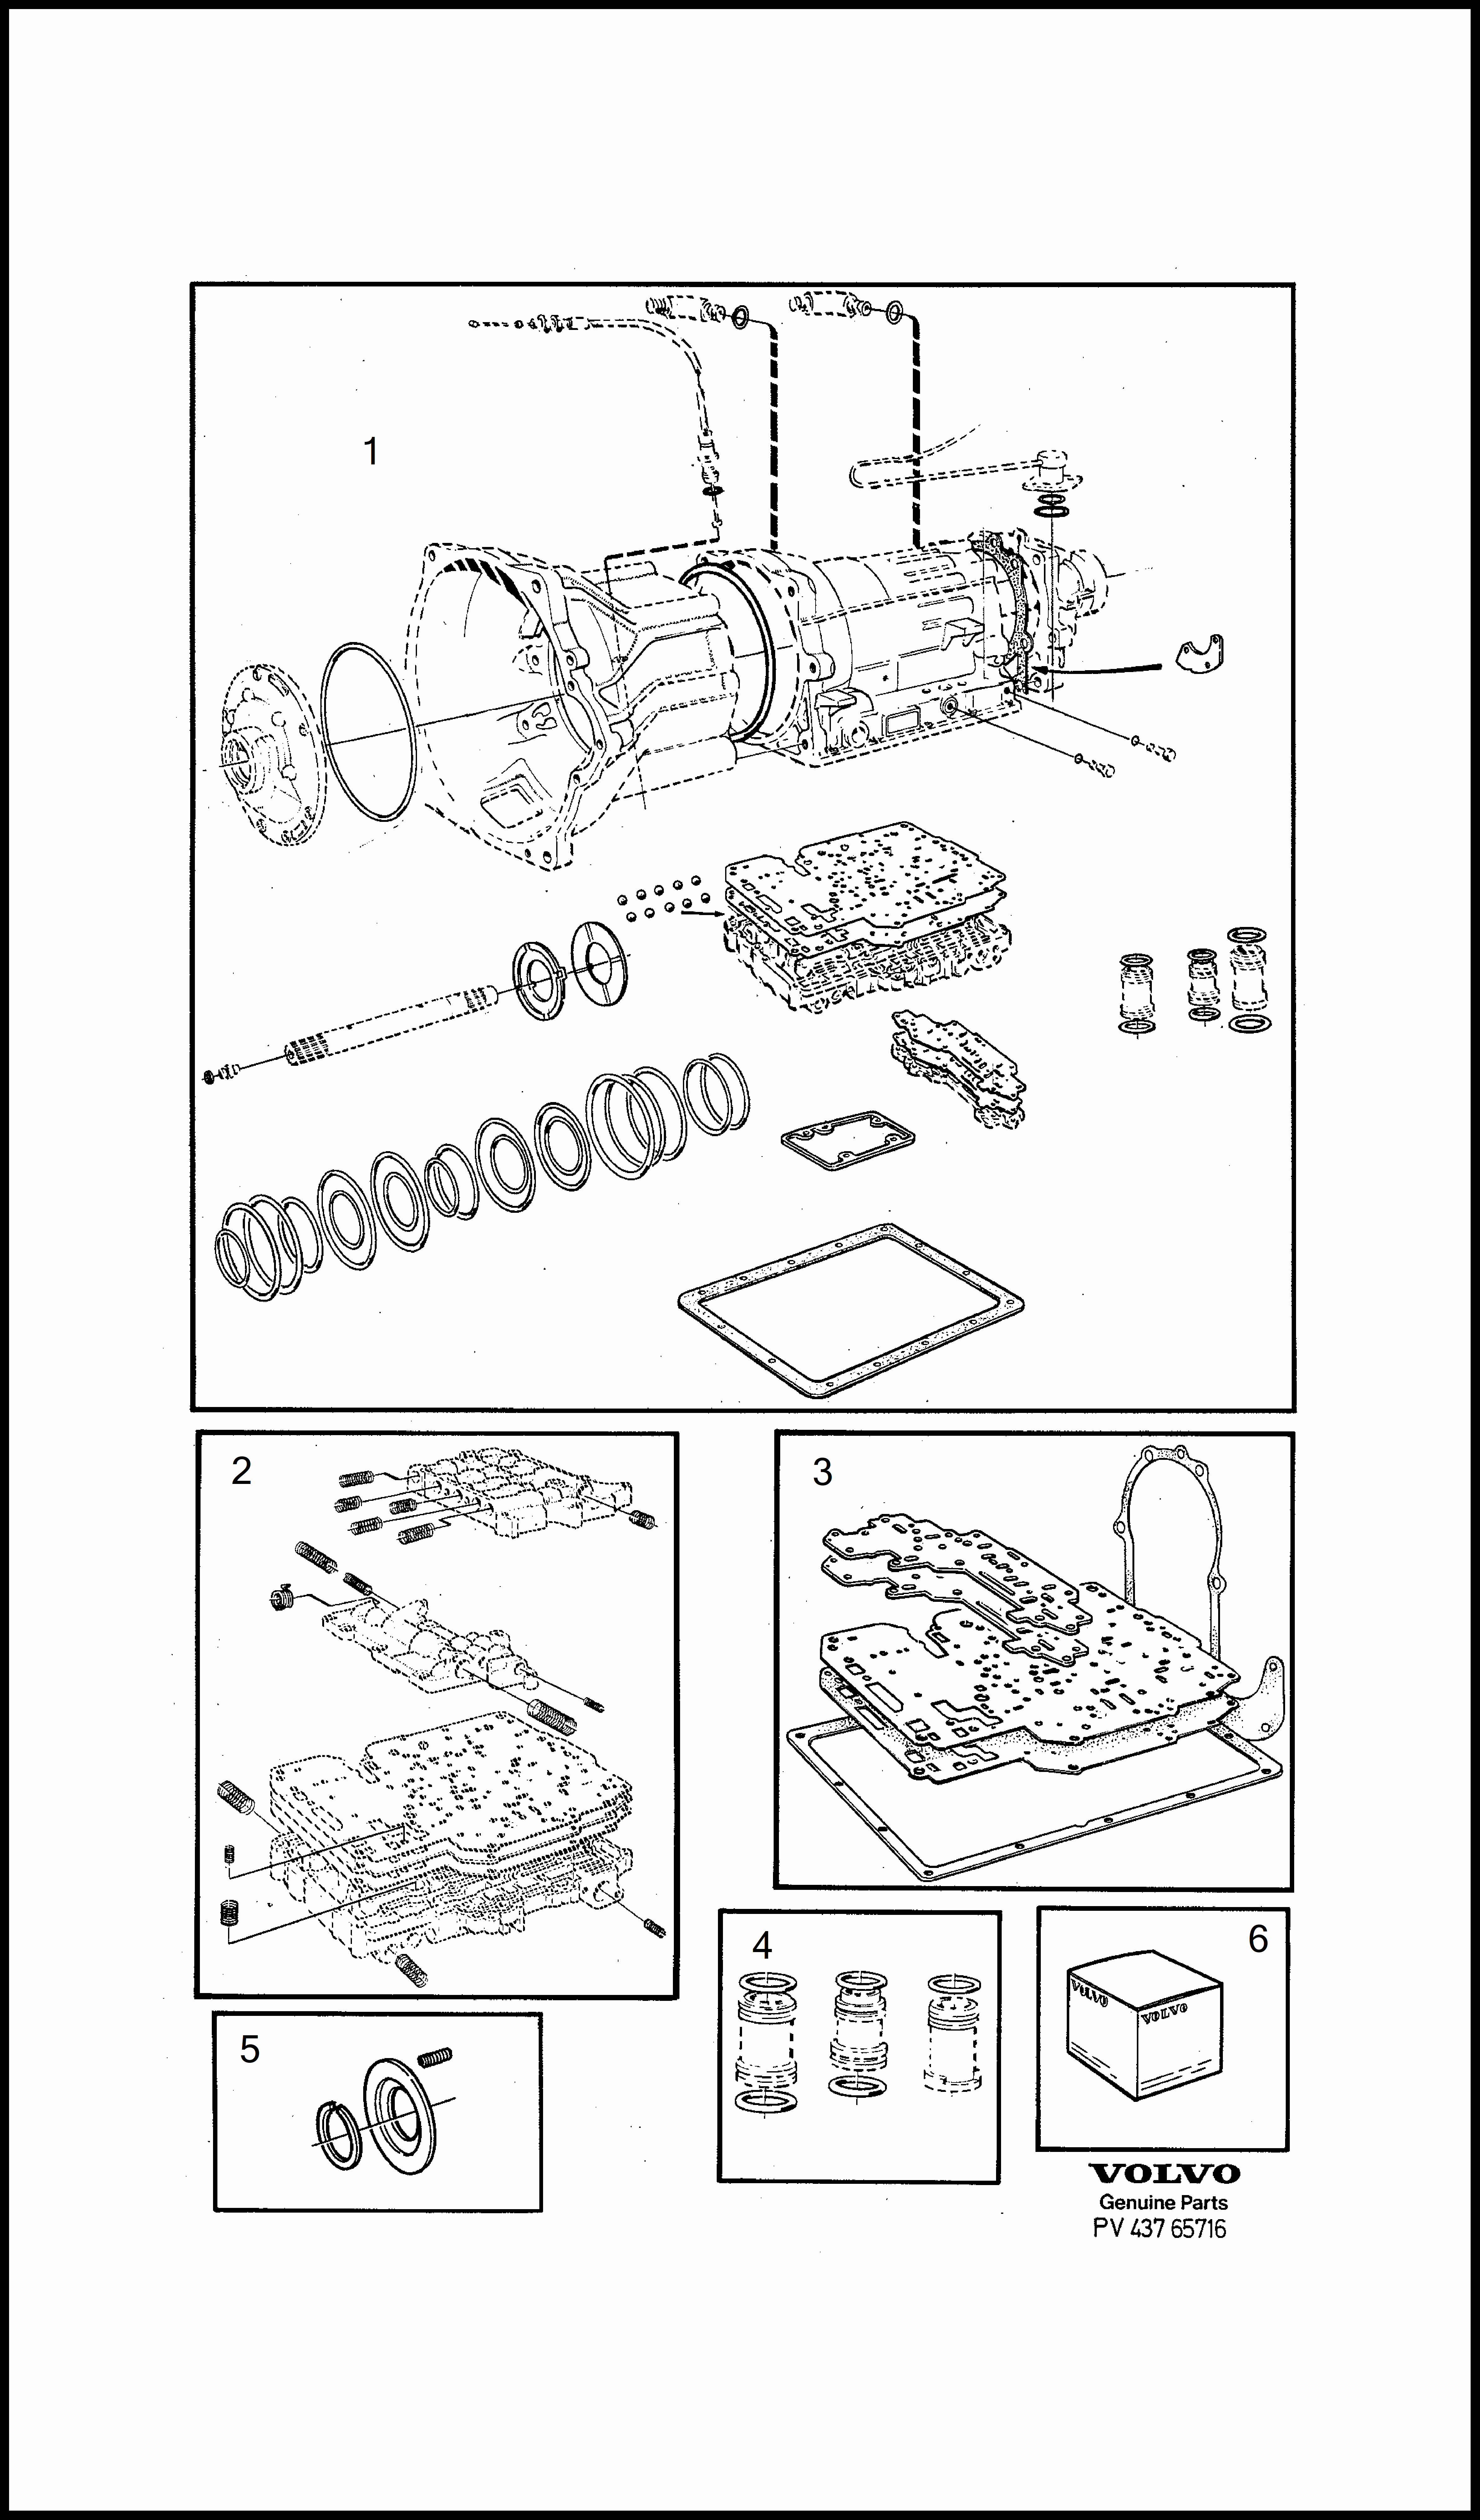 repair kits dla Volvo 240 240